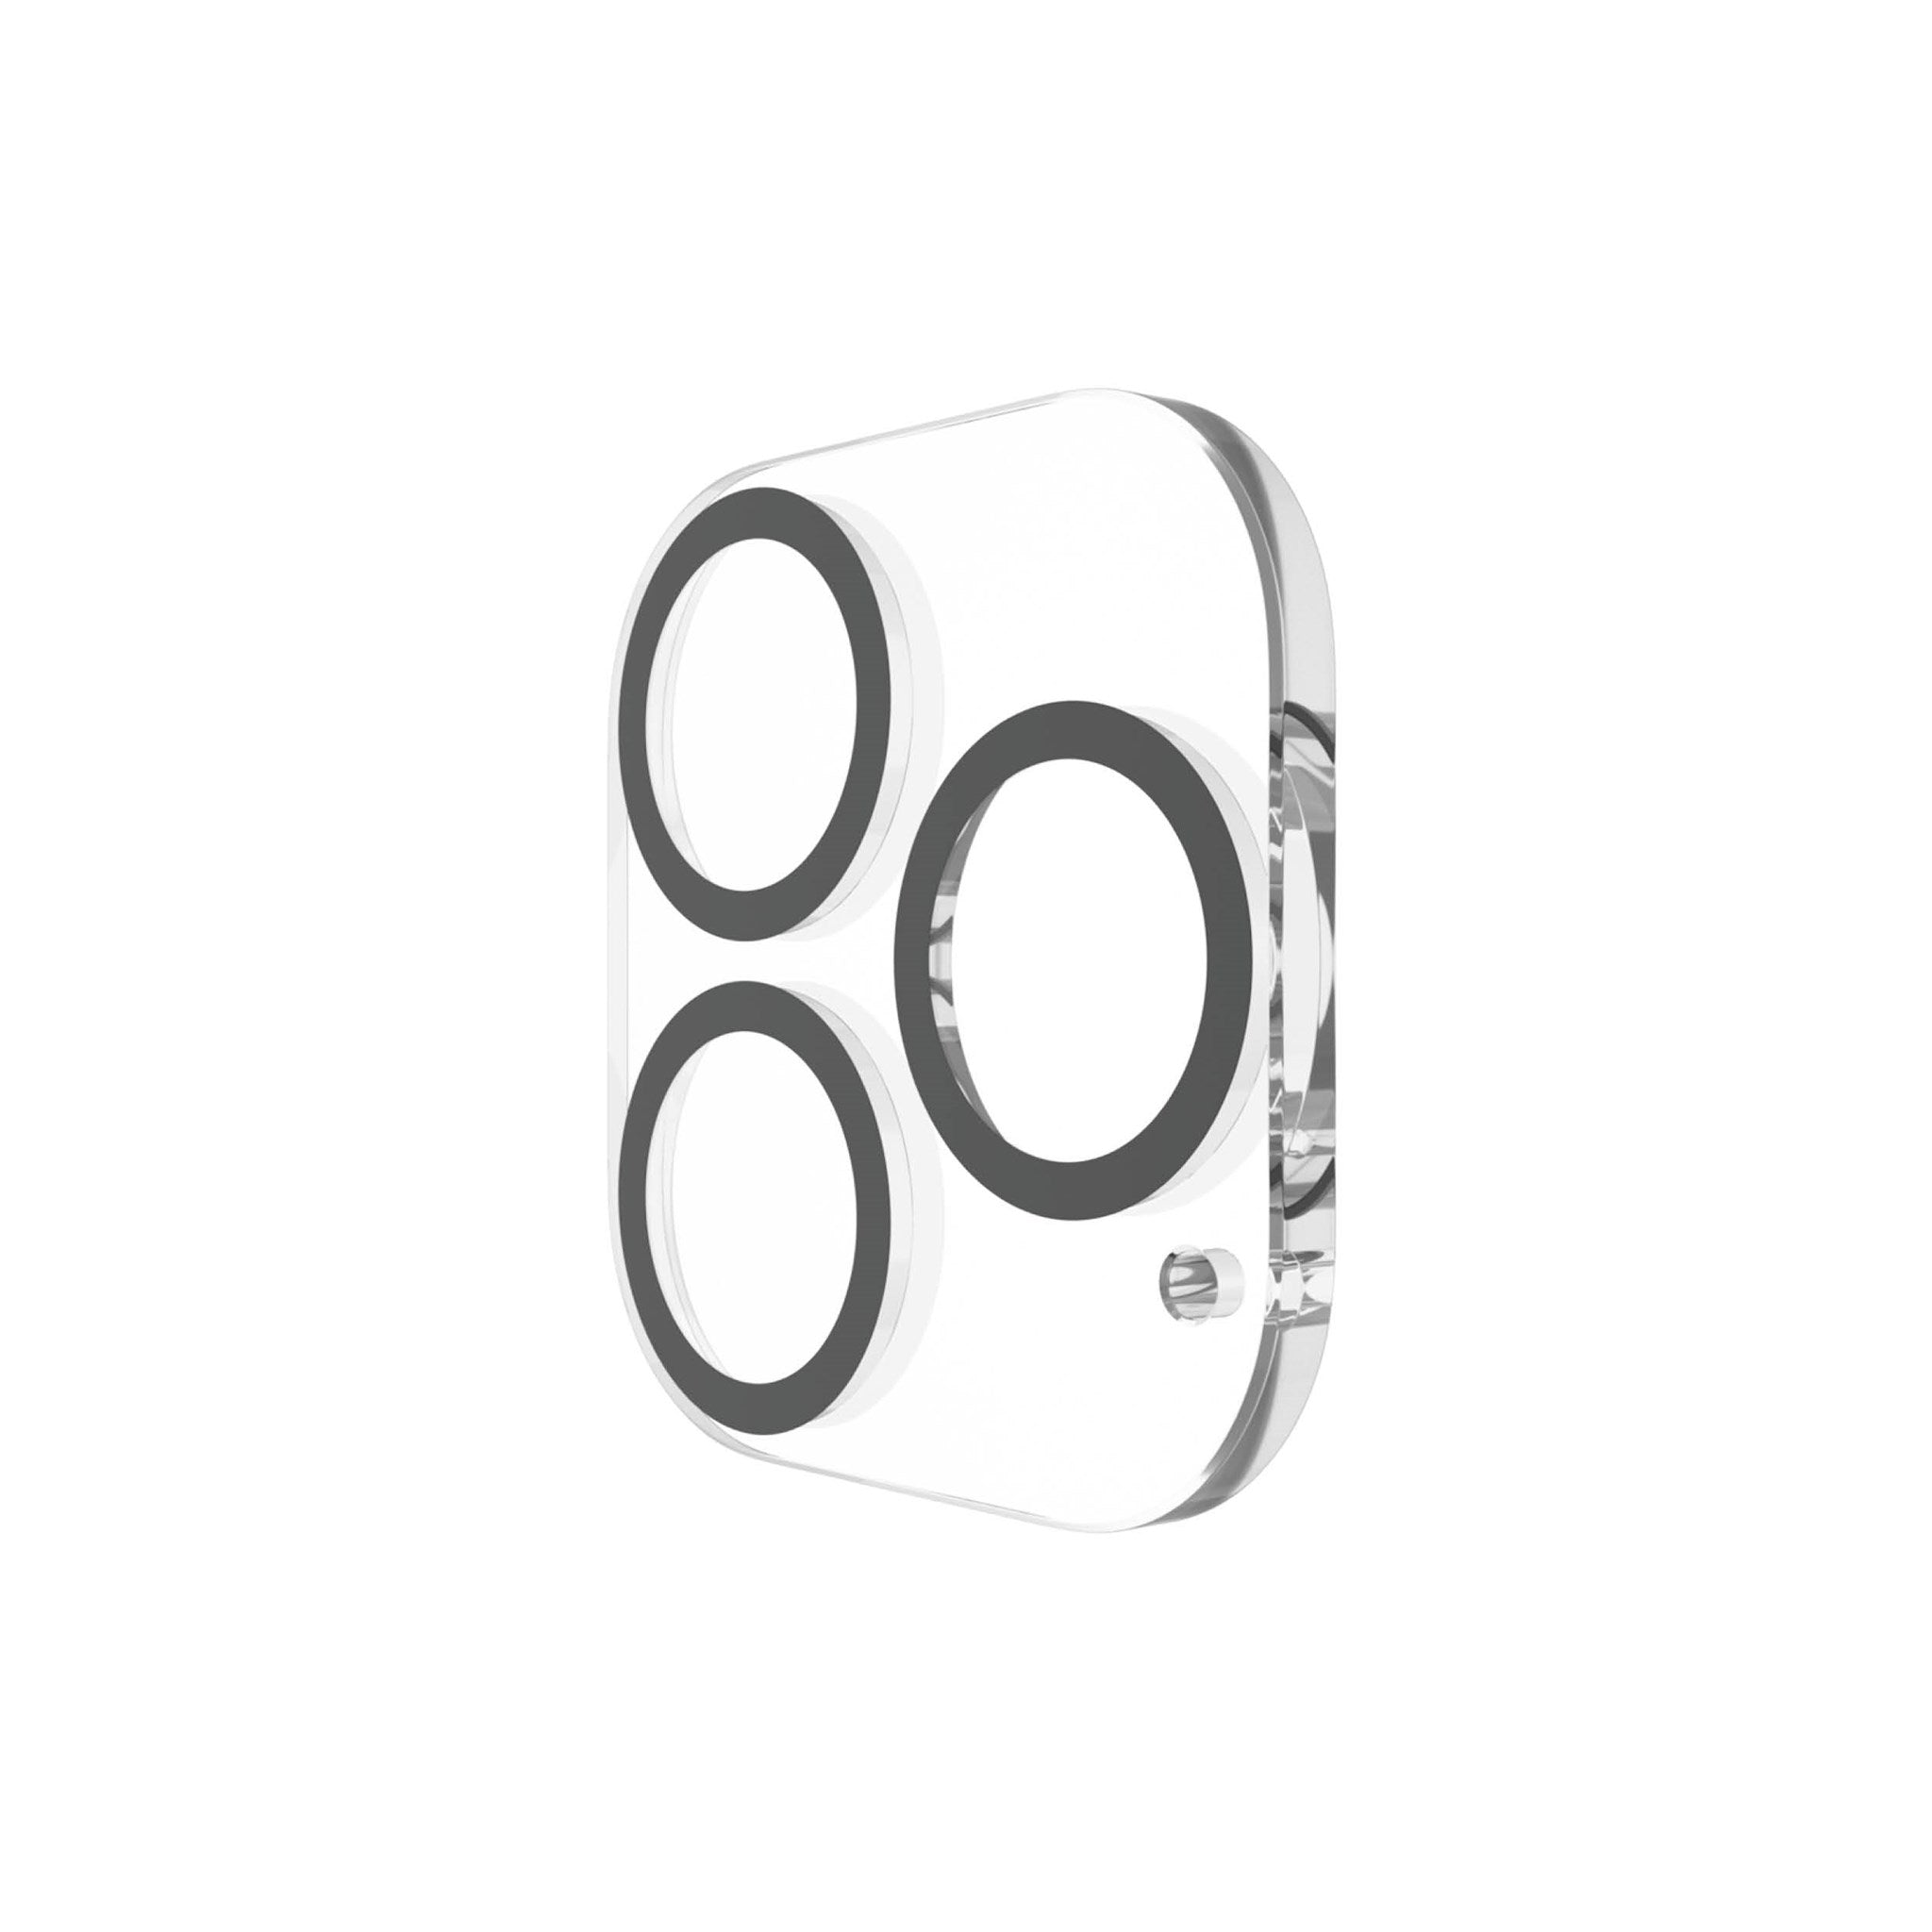 Max) GLASS iPhone 13 13 PicturePerfect Pro iPhone Pro Apple | Kameraschutz(für PANZER